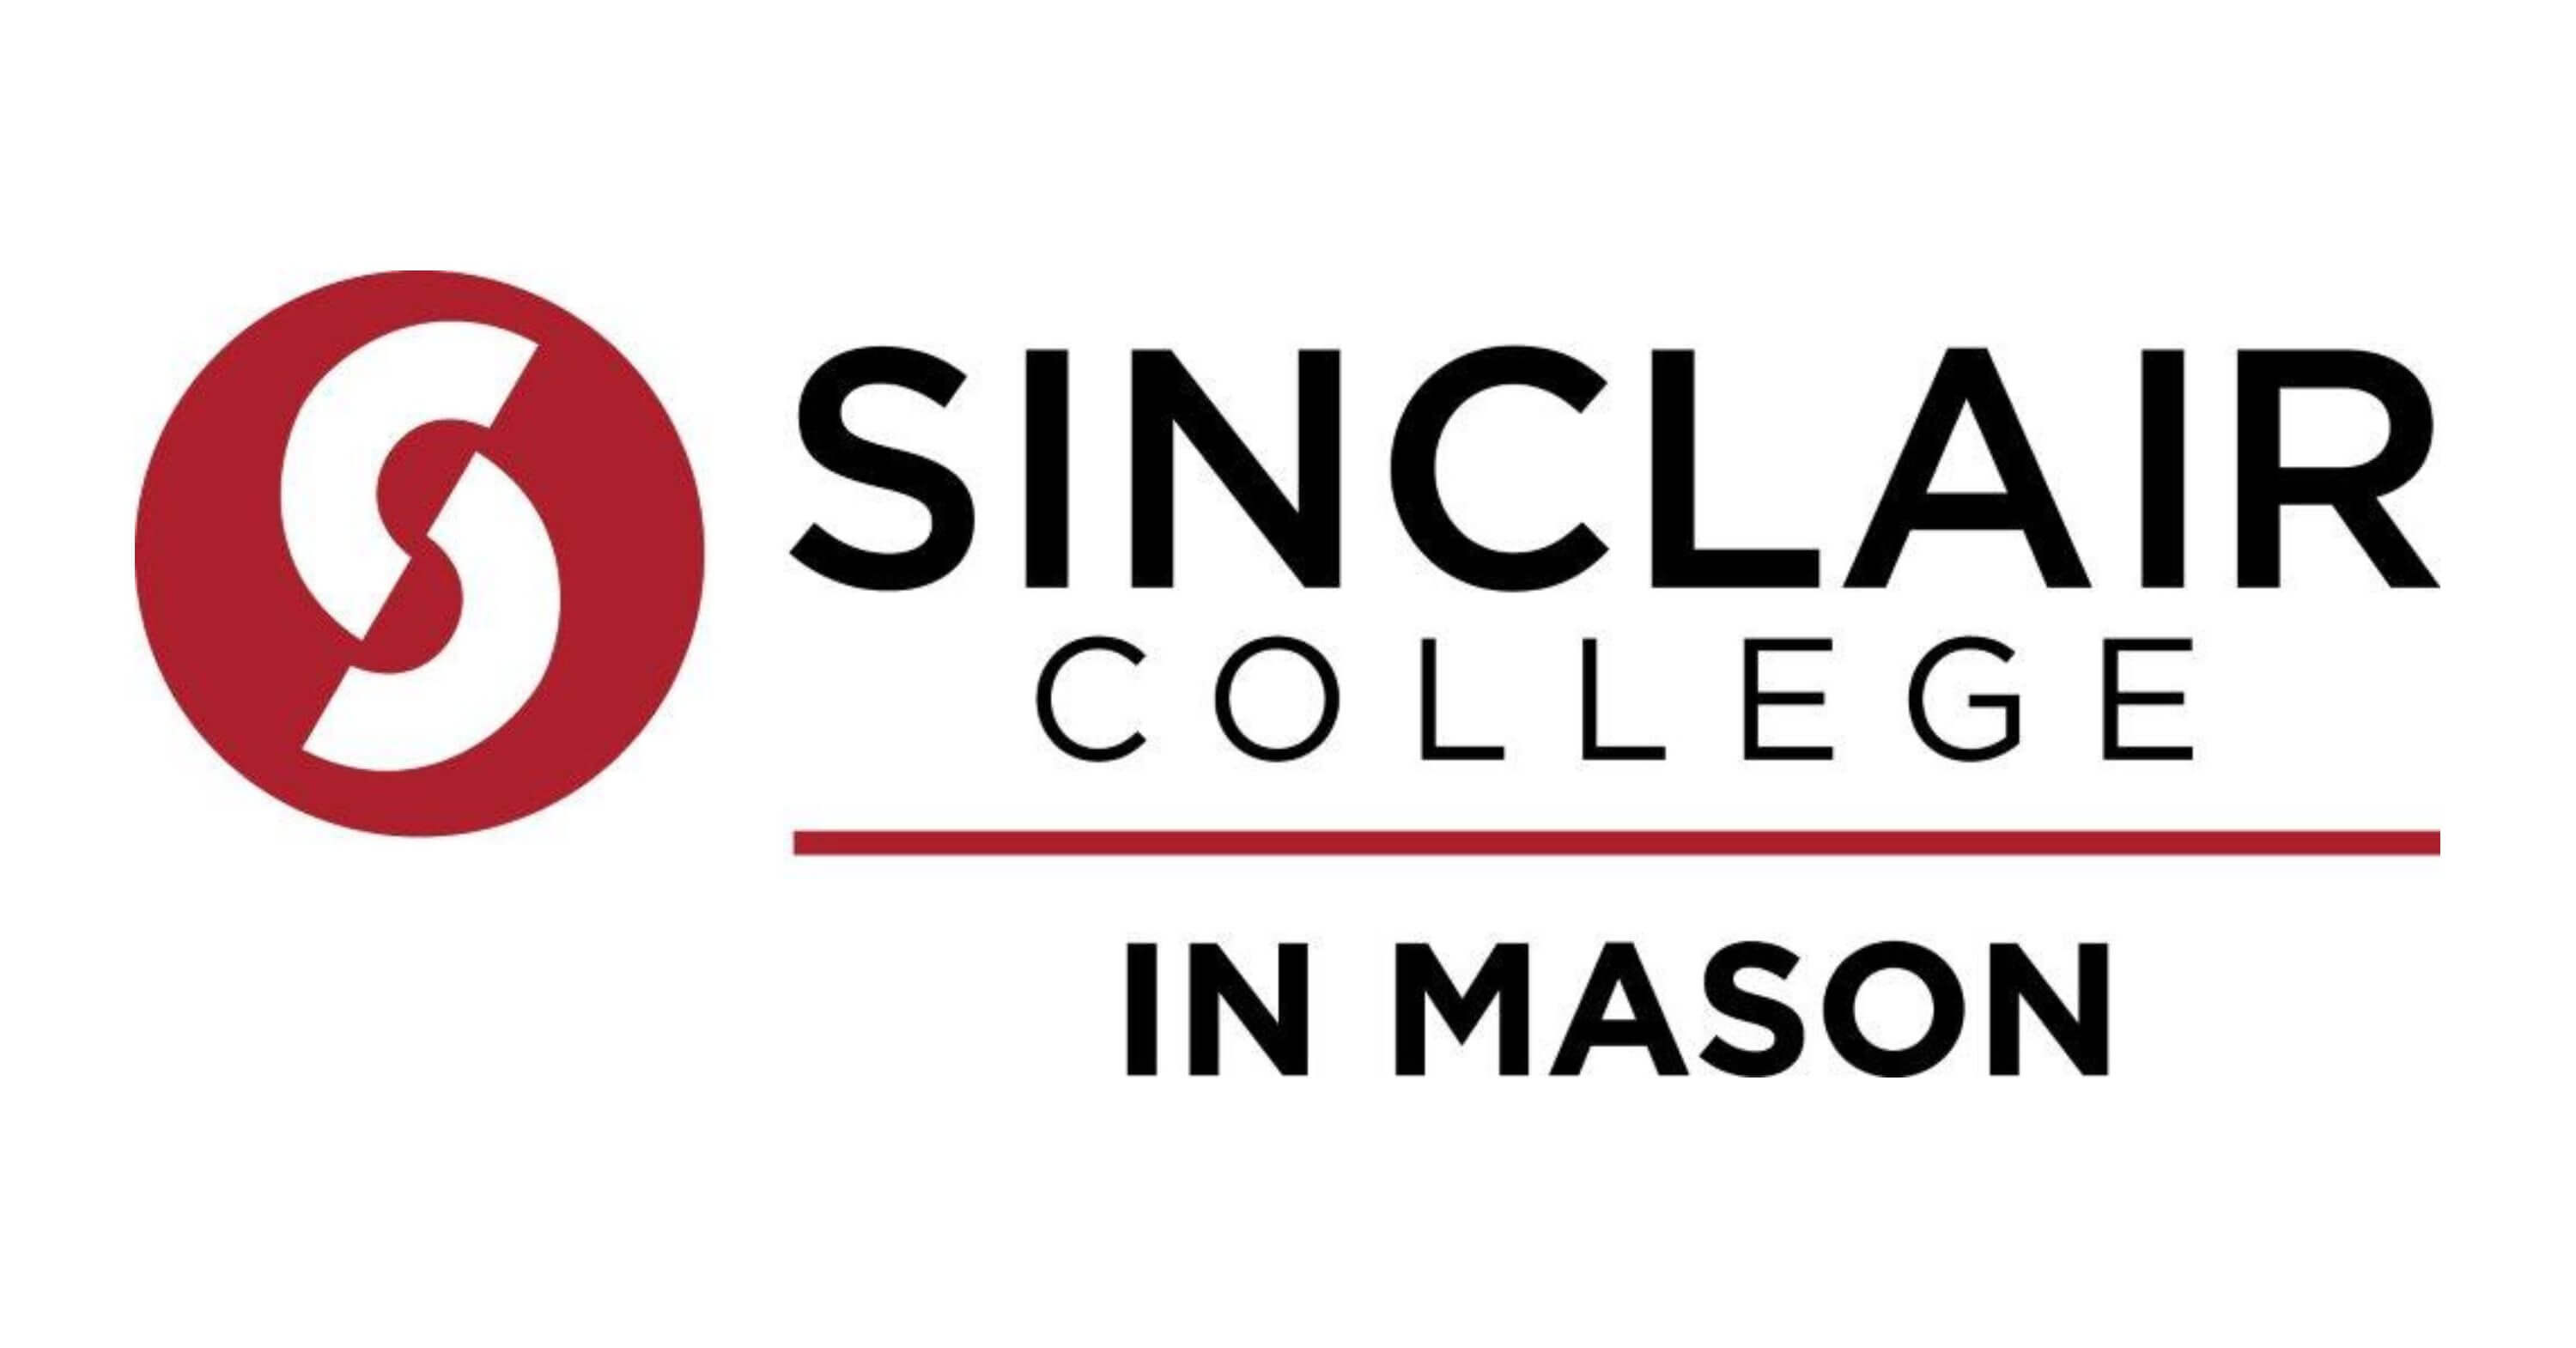 Sinclair College in Mason